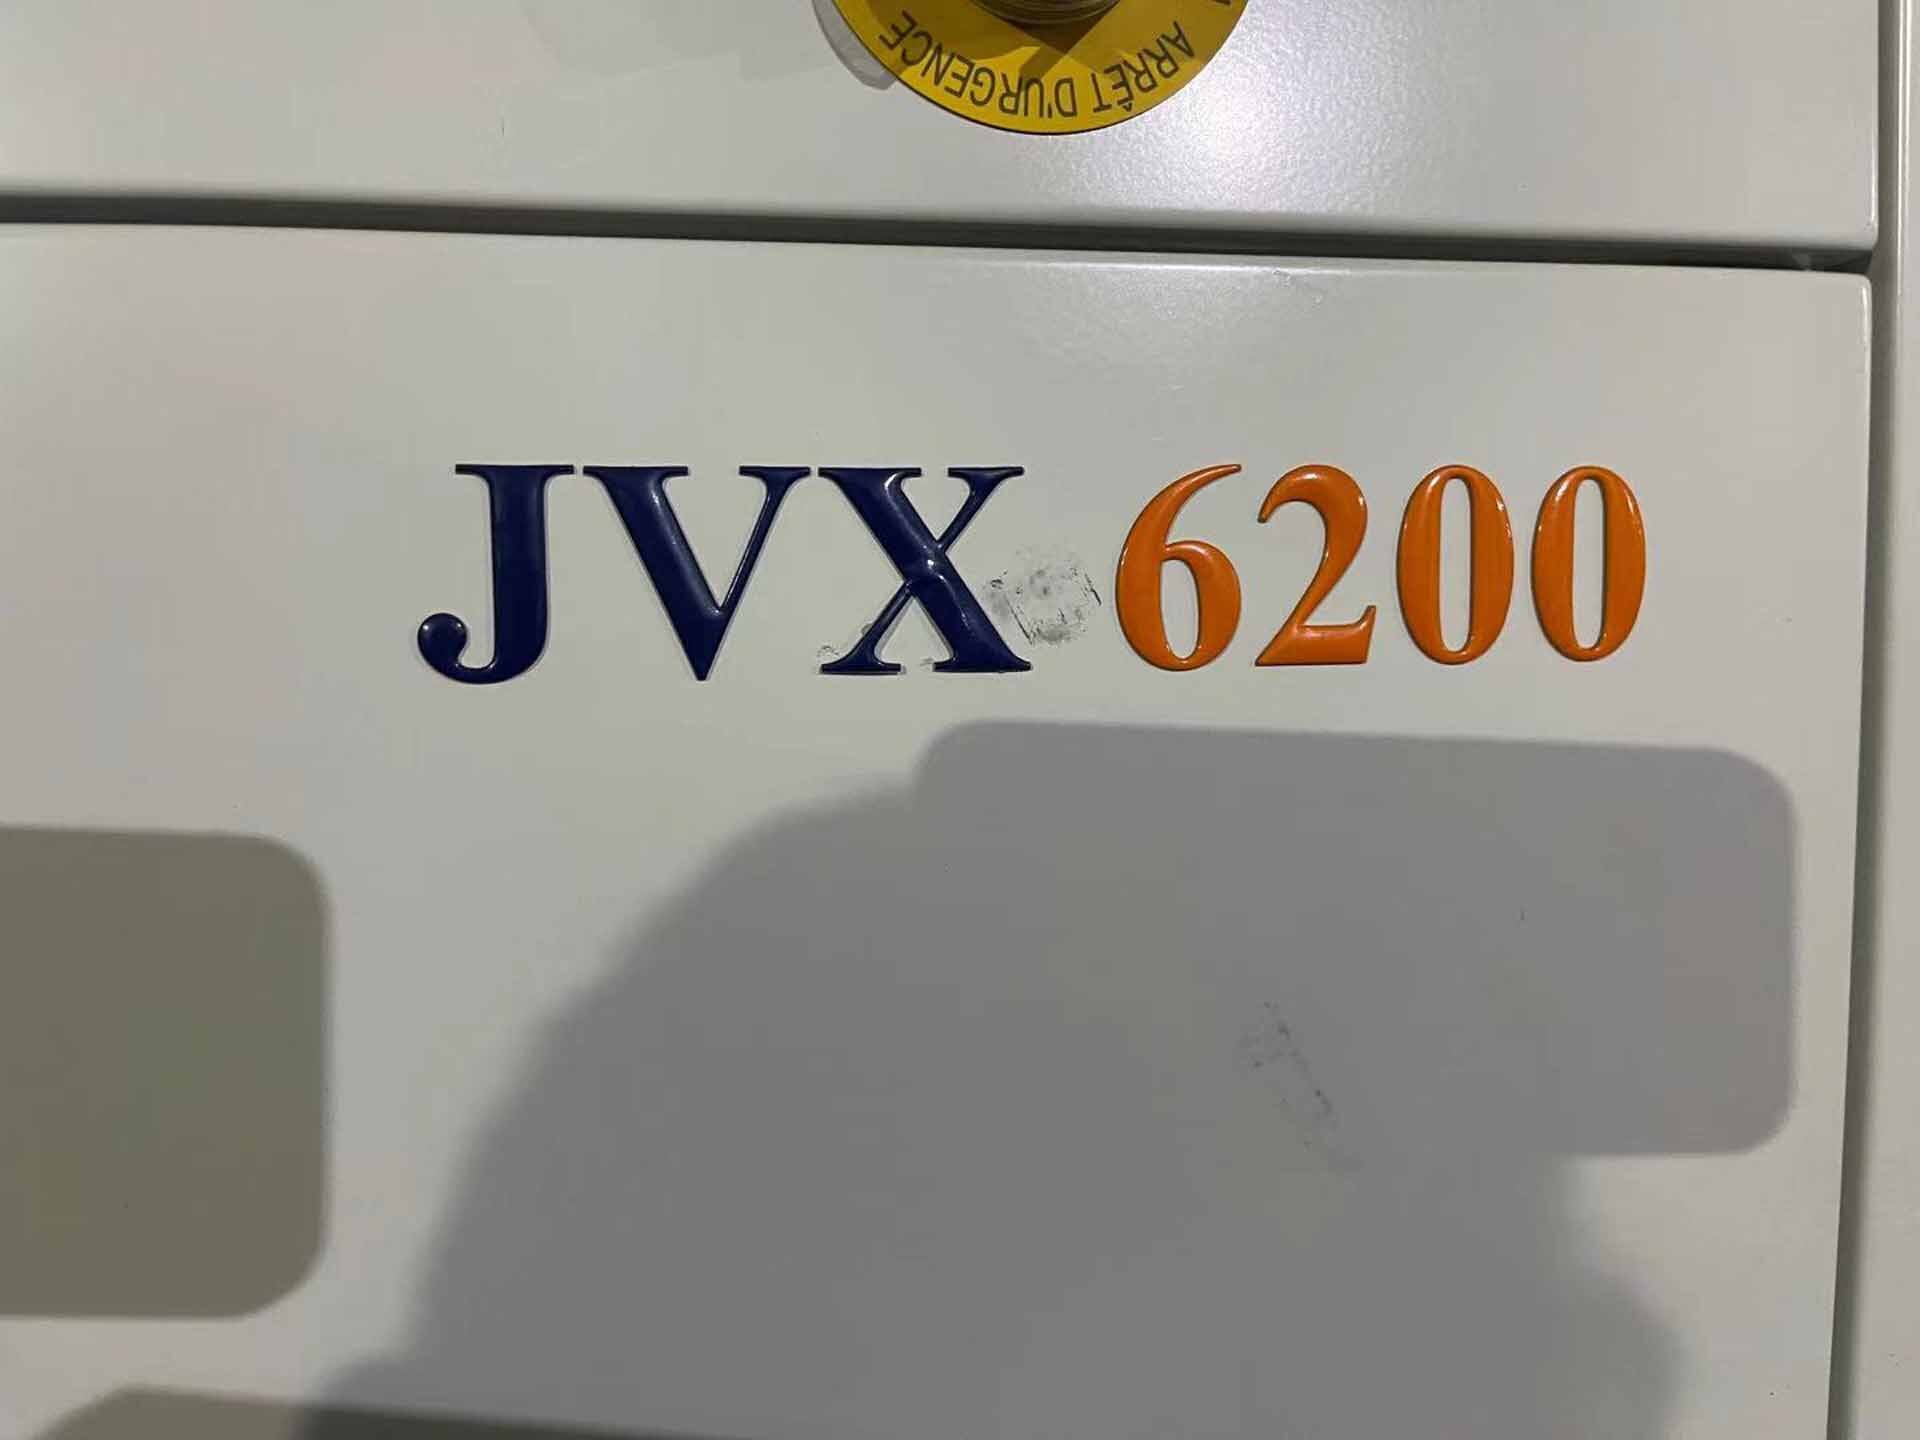 圖為 已使用的 JORDAN VALLEY JVX 6200 待售